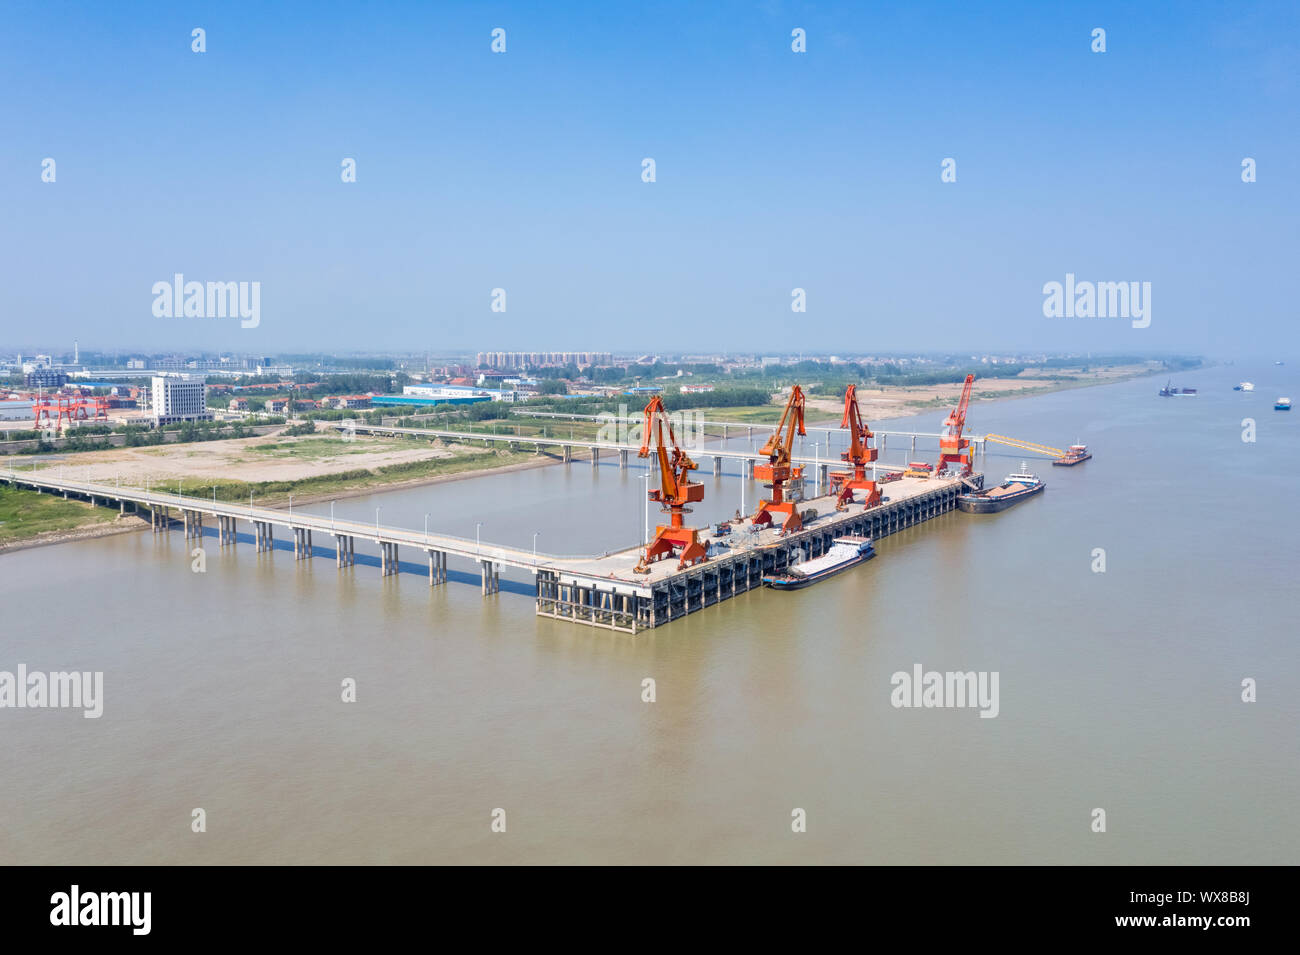 xiaochi cargo wharf Stock Photo